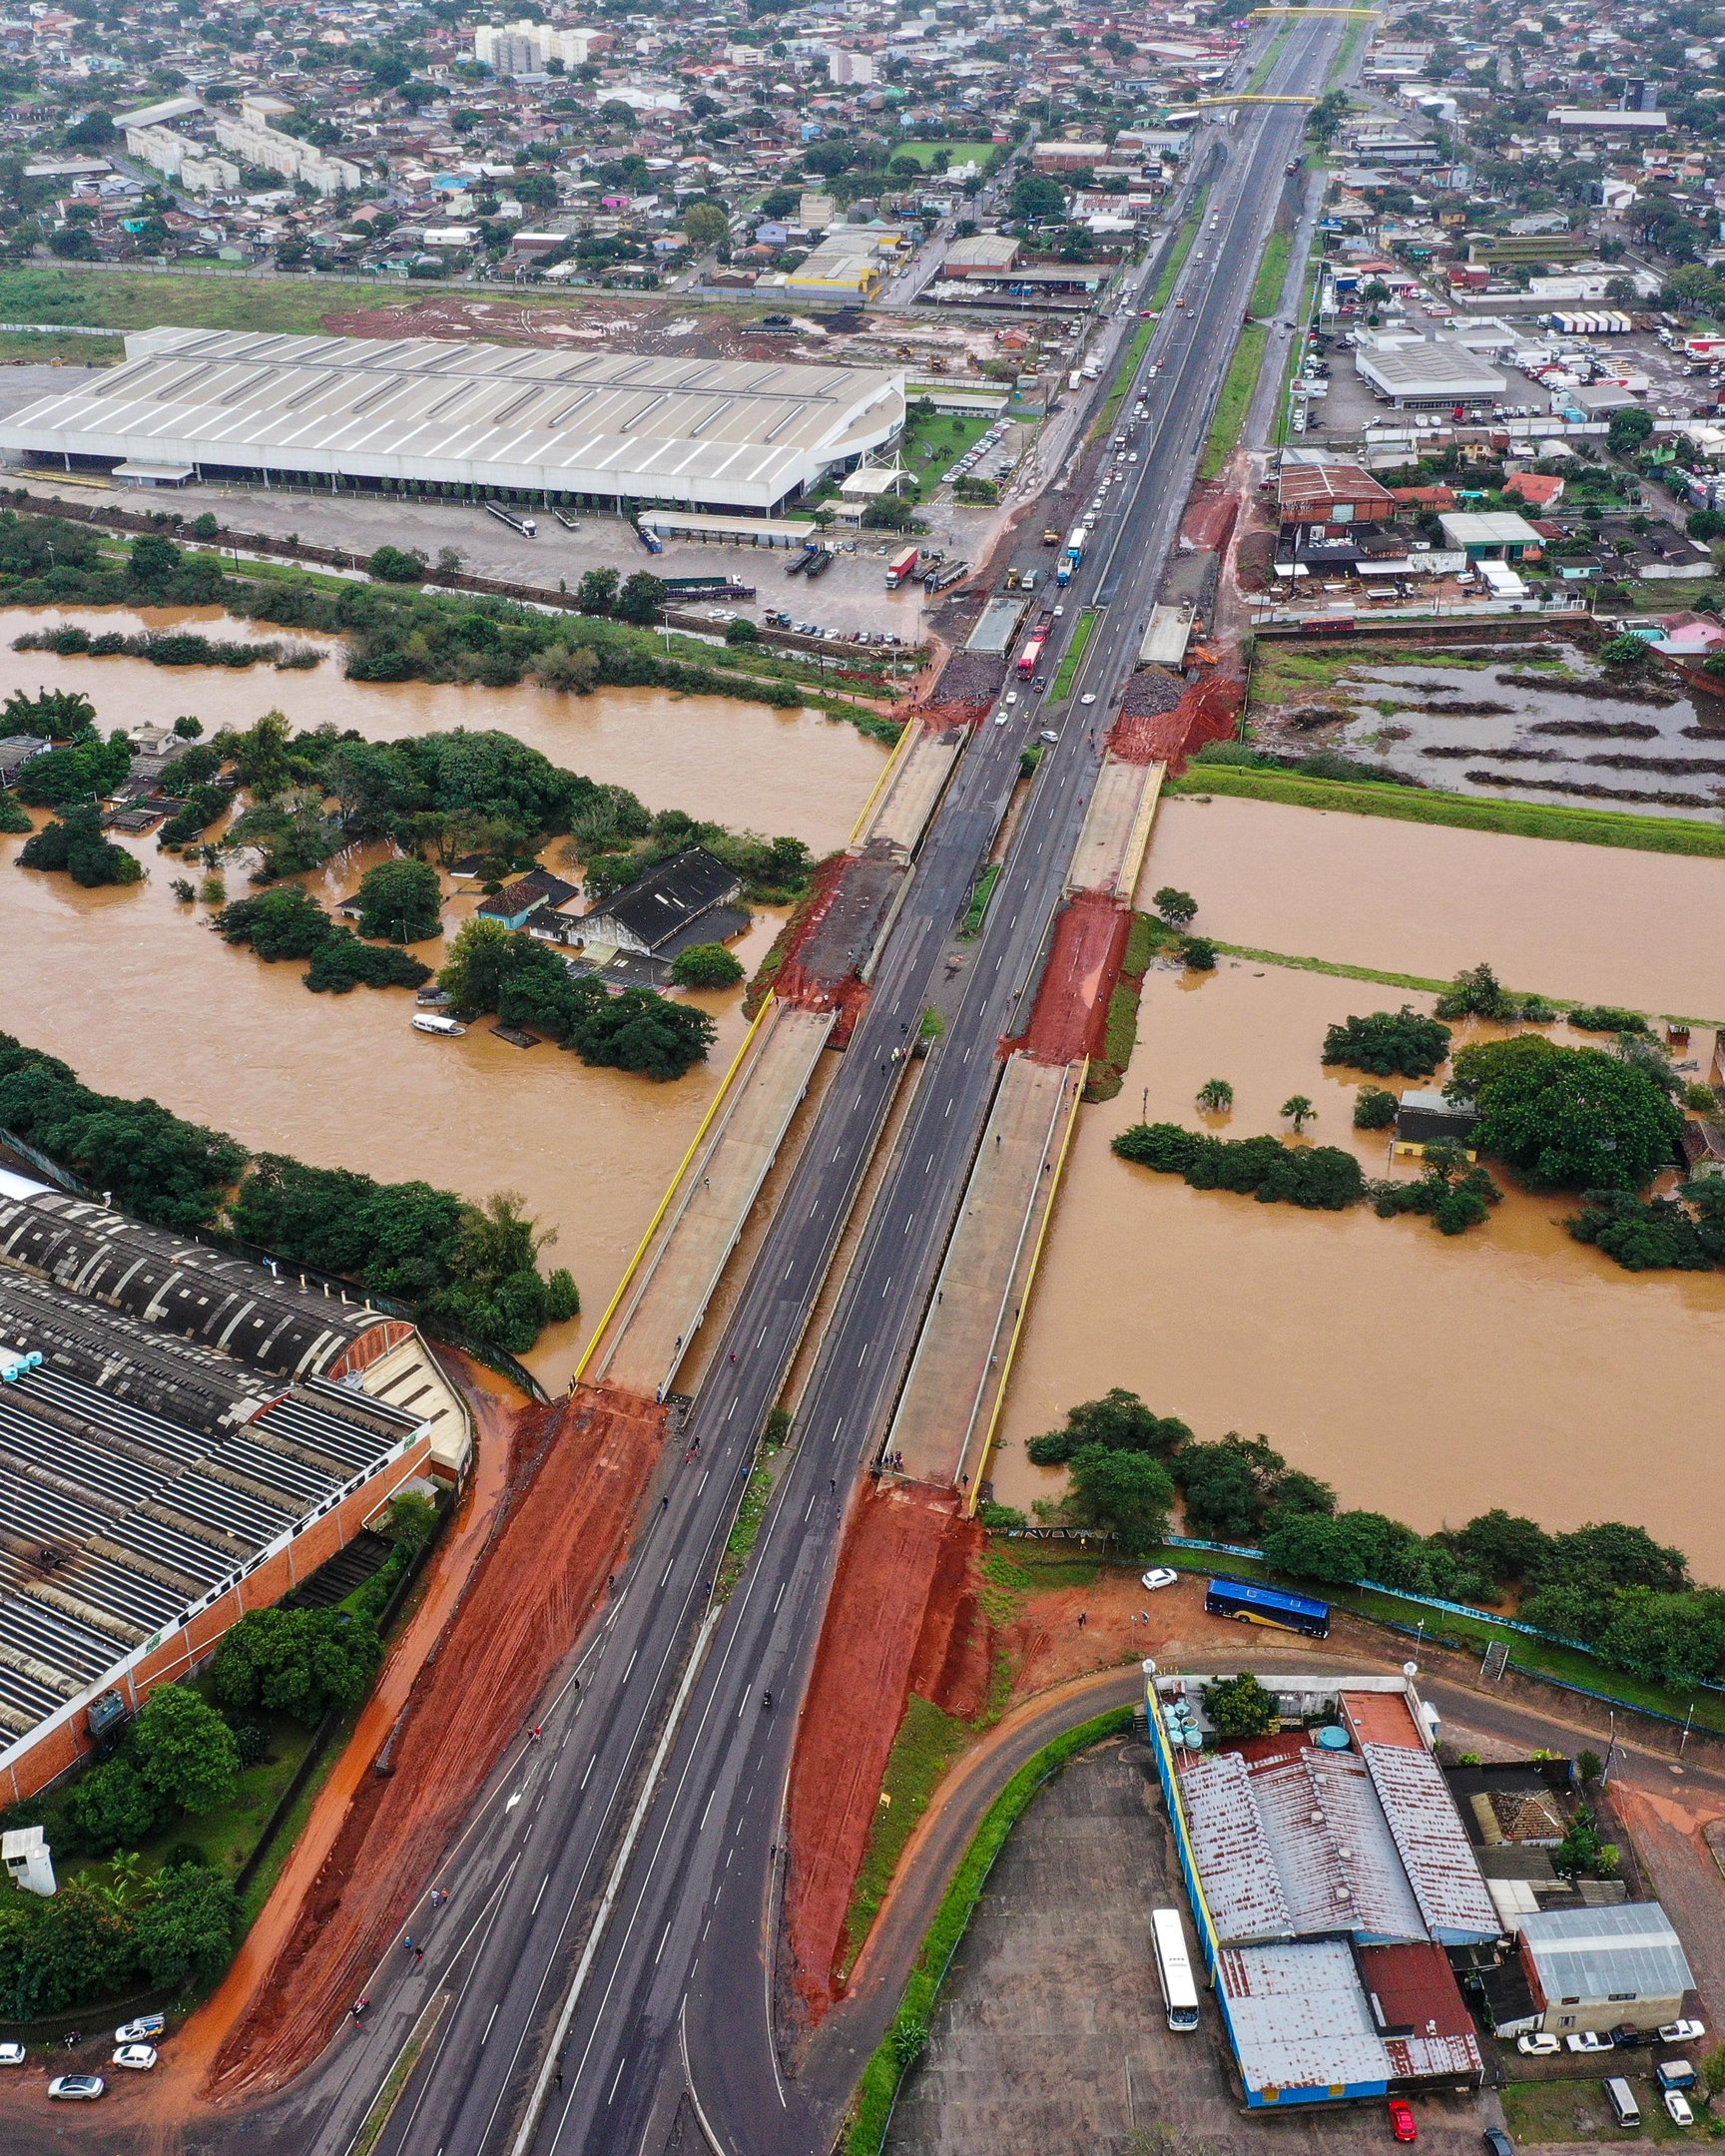 CATÁSTROFE NO RS: Pontes do Rio dos Sinos permanecerão fechadas em São Leopoldo, afirma prefeito